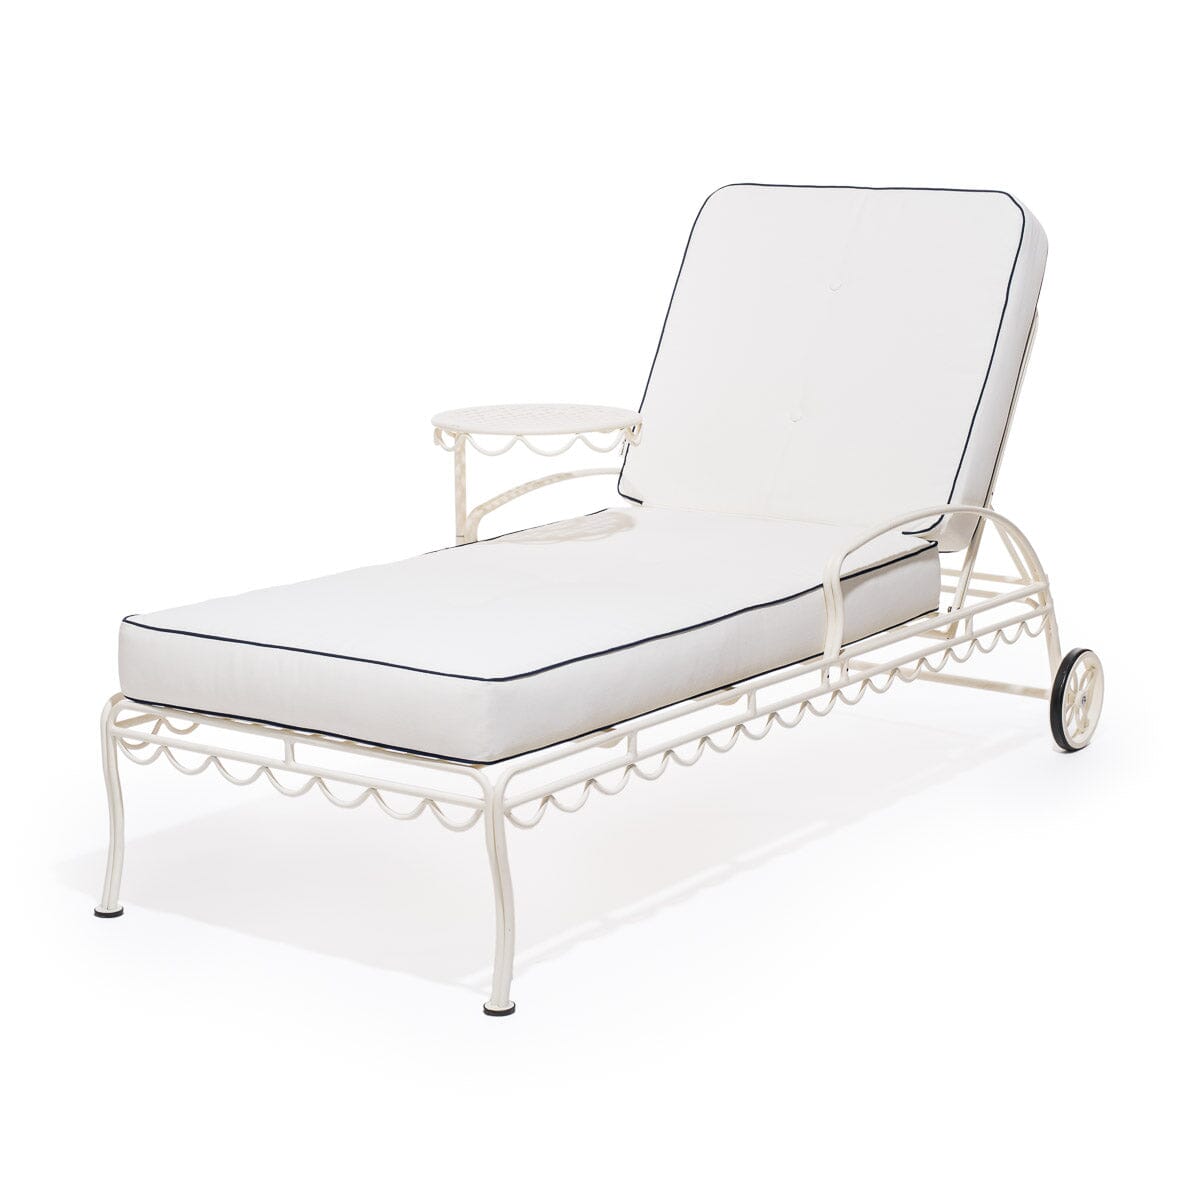 The Al Fresco Sun Lounger Cushion - Rivie White Al Fresco Sun Lounger Cushions Business & Pleasure Co 